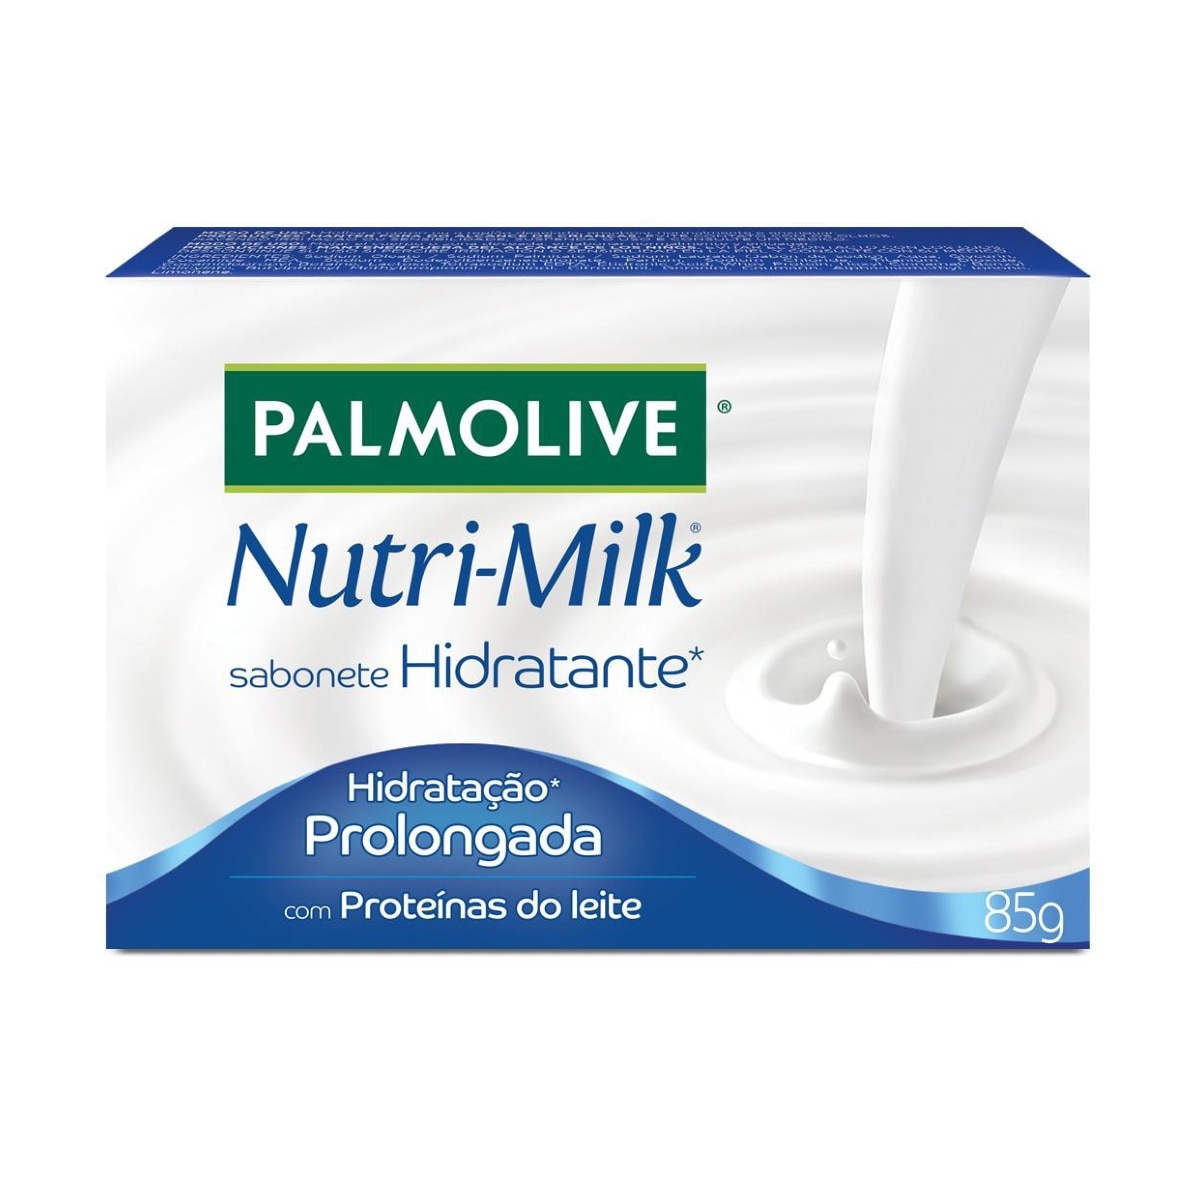 Sabonete em Barra Palmolive Nutri-Milk Hidratacao Prolongada 85g